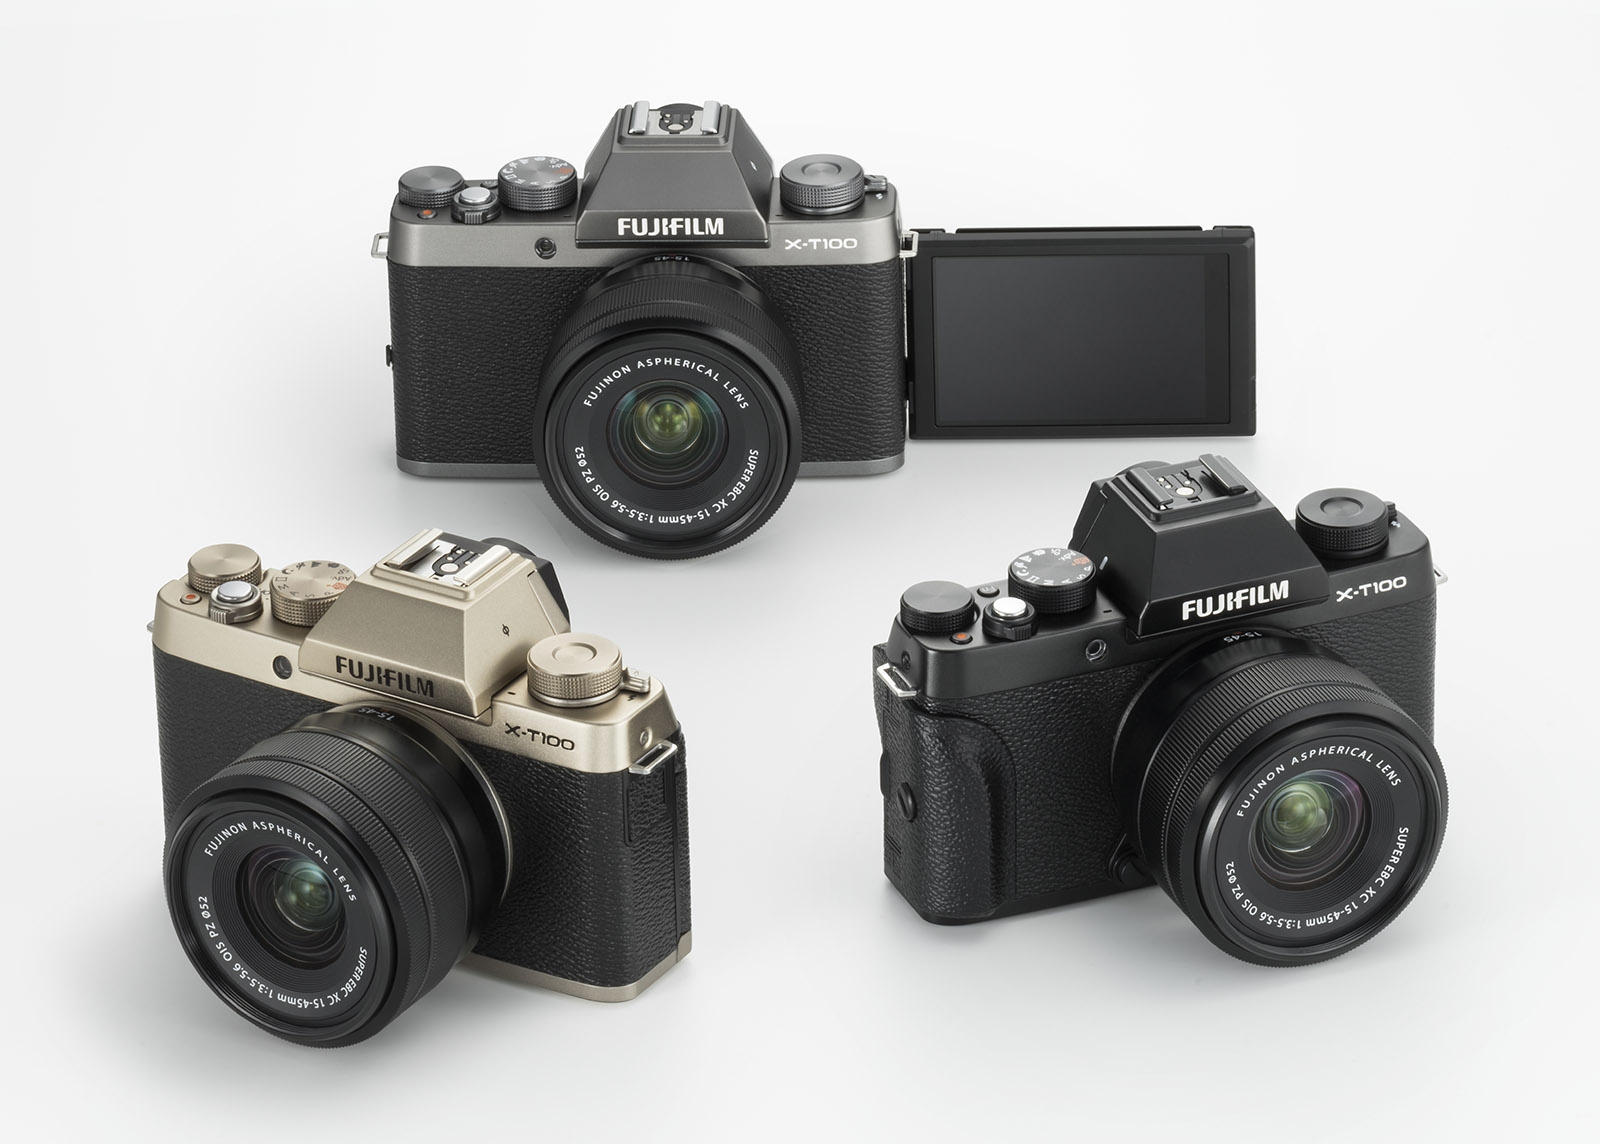 Fujifilm'den retro görünümlü yeni aynasız fotoğraf makinesi: X-T100